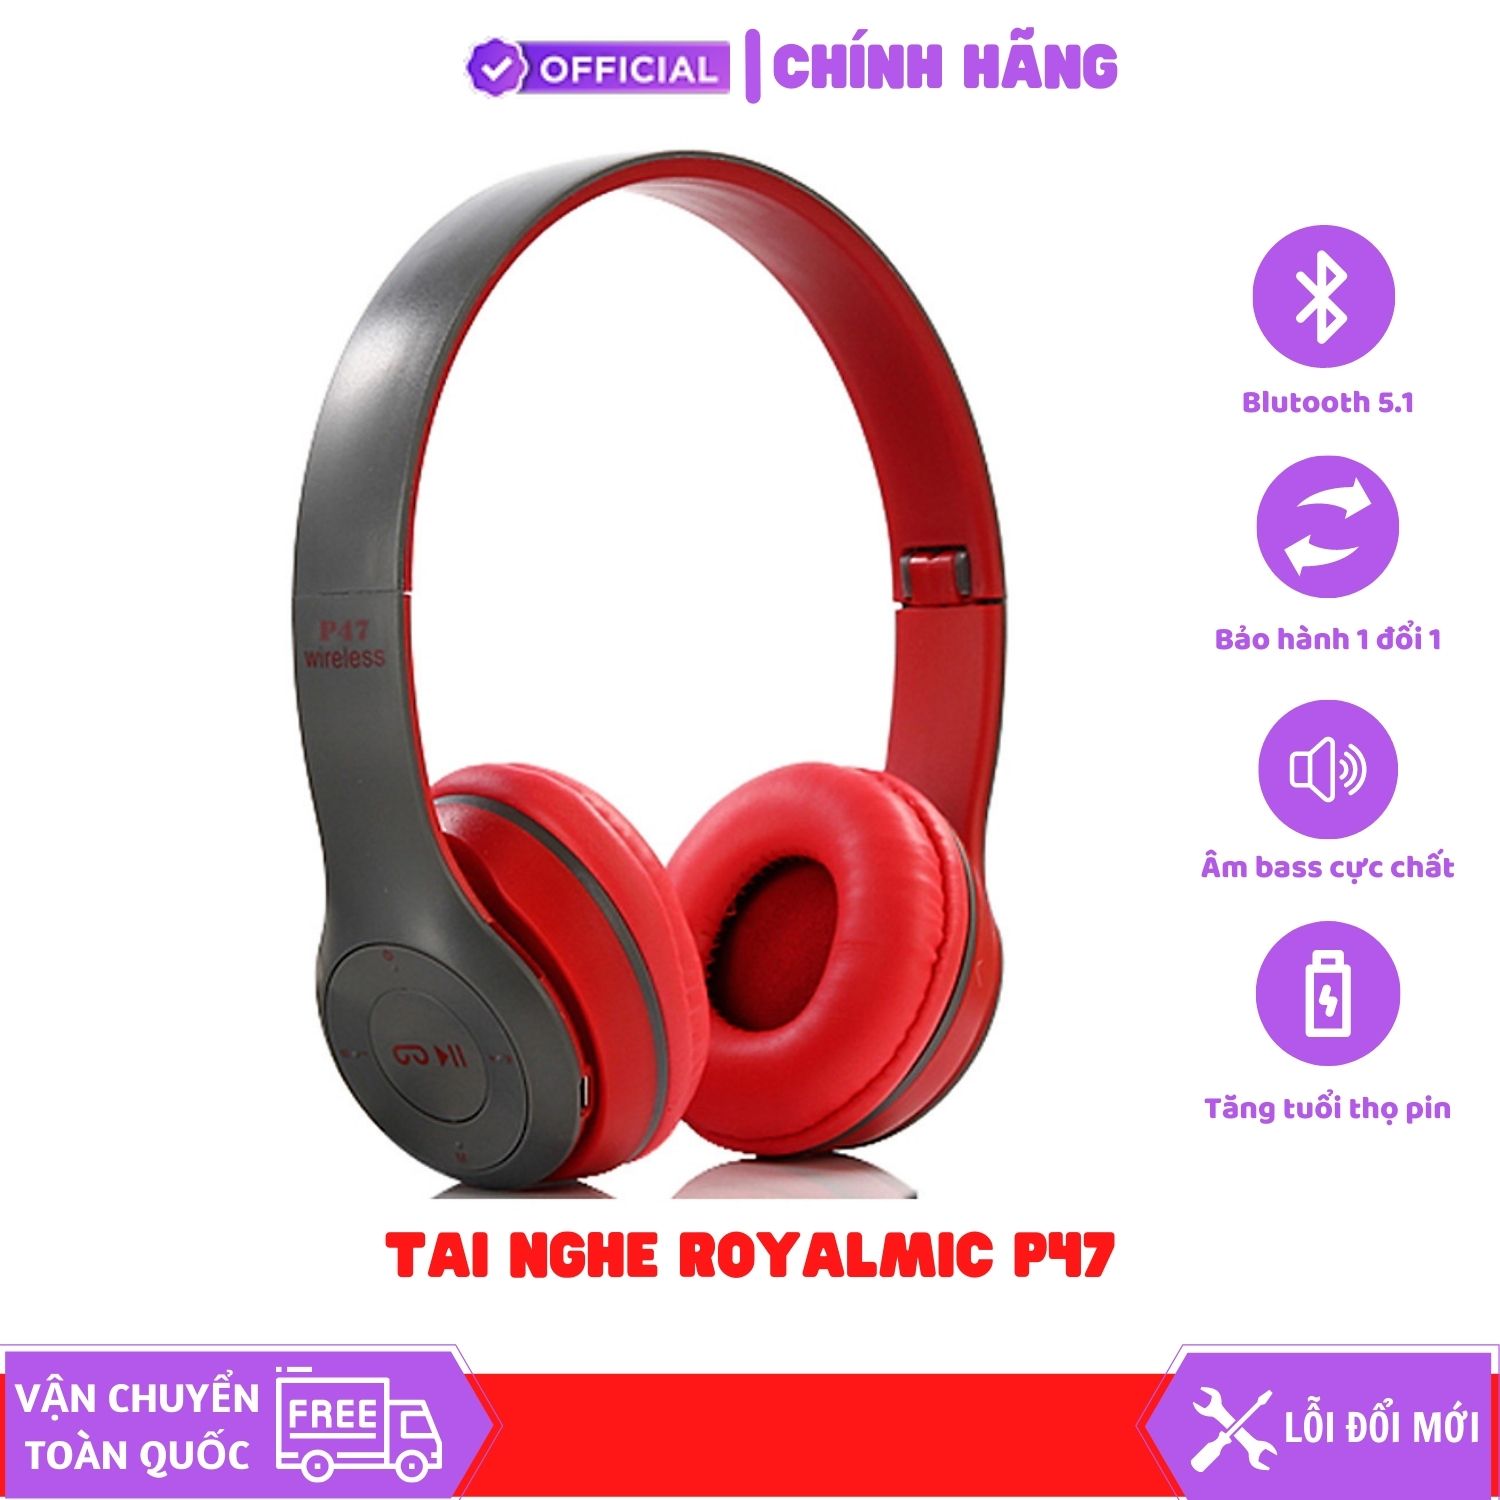 Tai Nghe Bluetooth ROYALMIC P47 có khe thẻ nhớ - Âm thanh cực chất, Có mic over ear headphones - Không đau tai - Hàng Chính Hãng